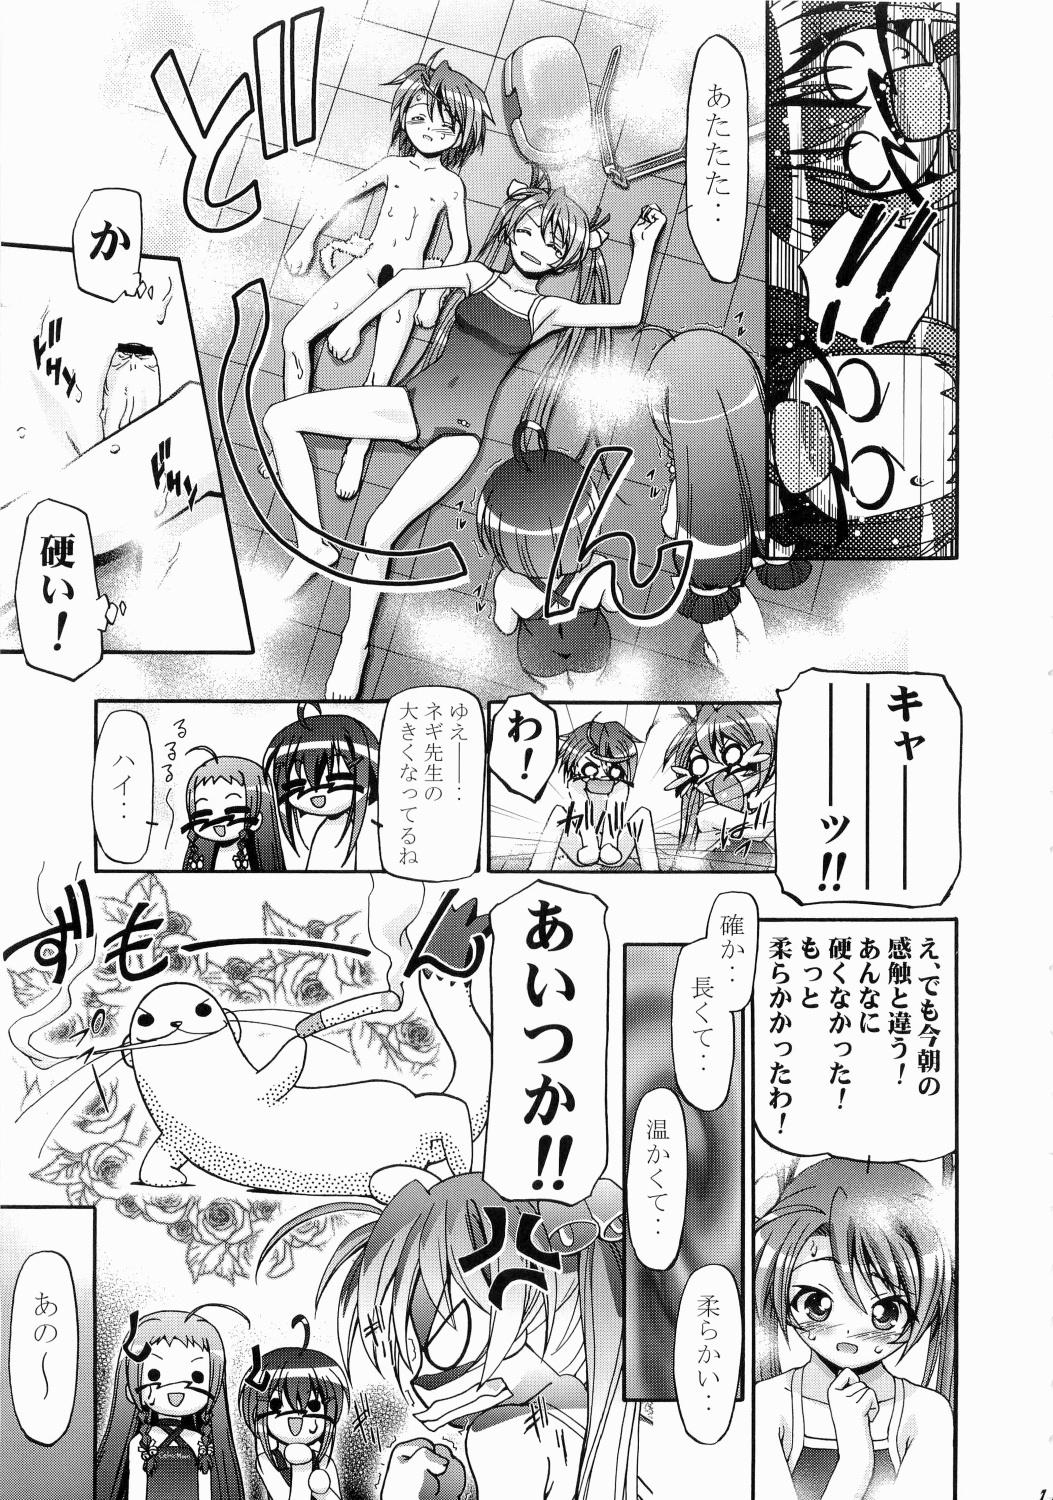 Chudai Mahora Gakuen Tyuutoubu 3-A - Mahou sensei negima Cute - Page 10